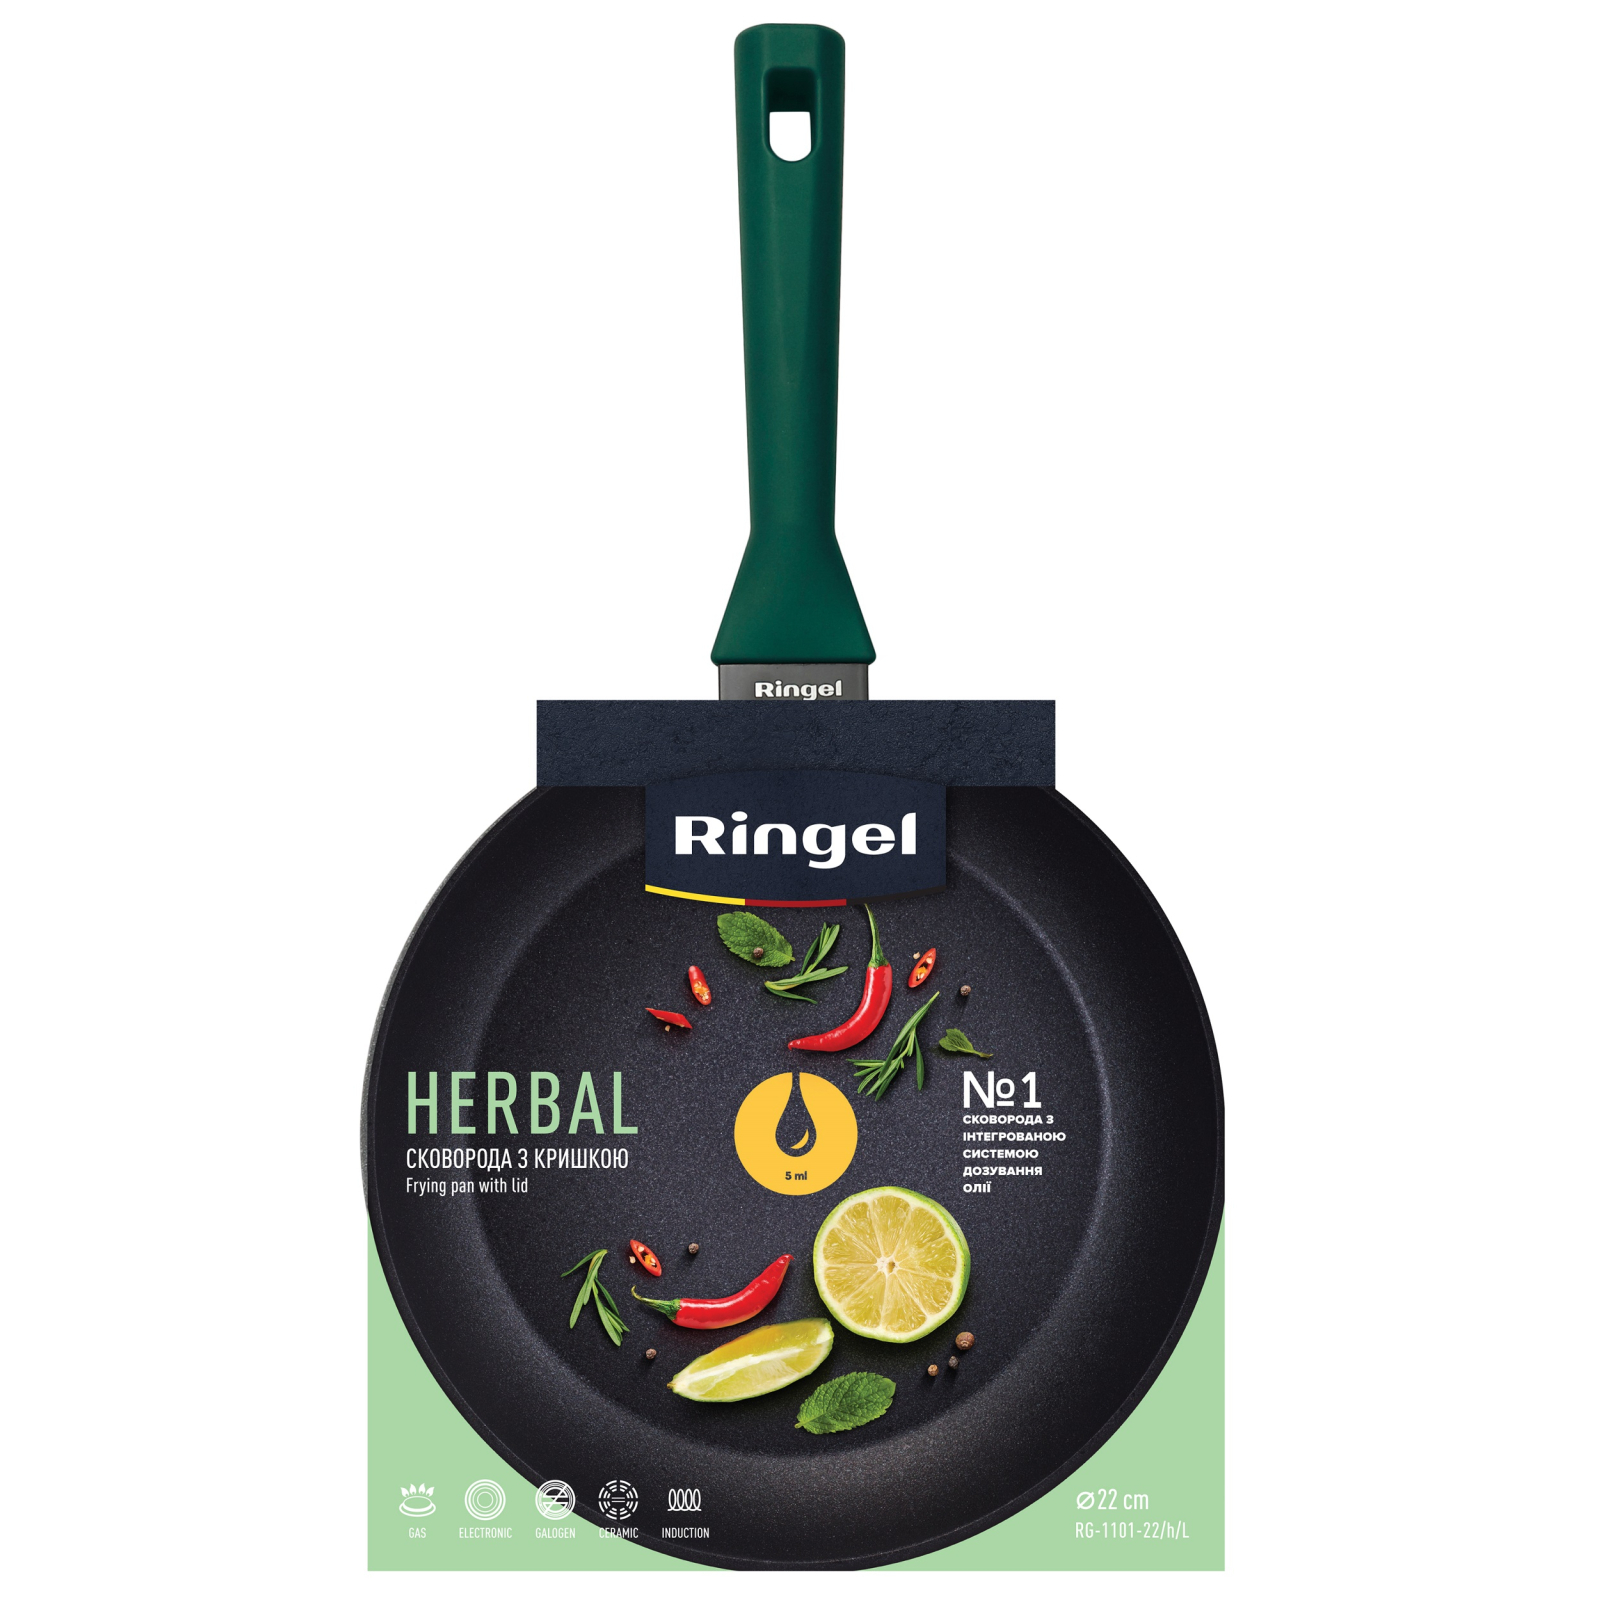 Сковорода Ringel Herbal 26 см (RG-1101-26/h/L) изображение 2